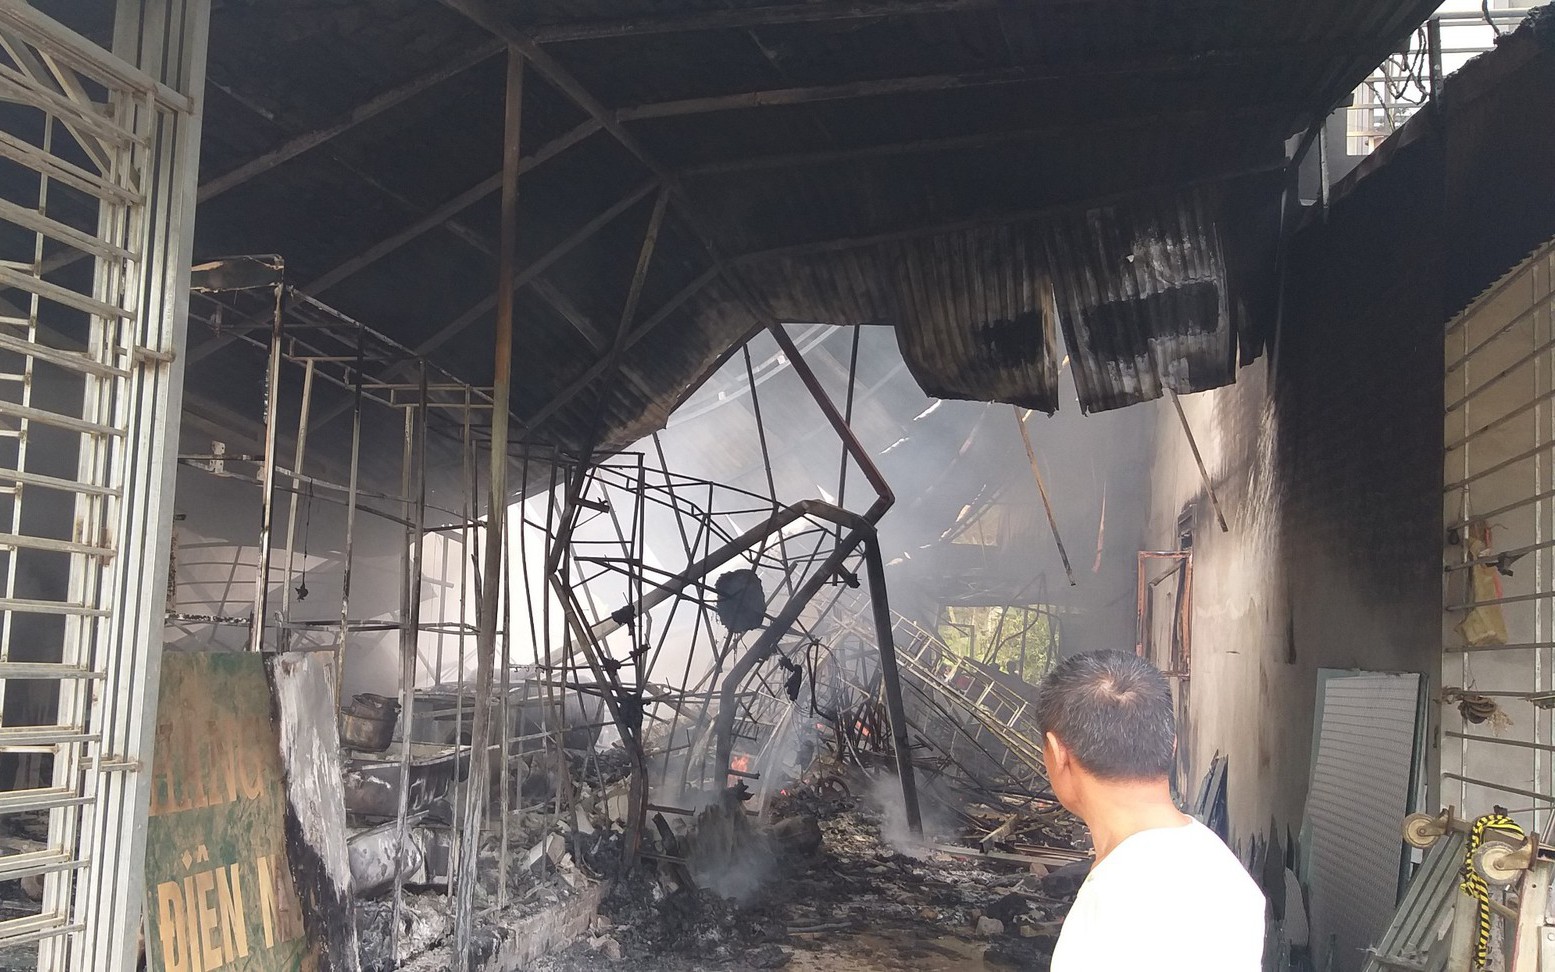 Yên Bái: Hỏa hoạn thiêu rụi ngôi nhà kinh doanh đồ nhựa, 2 nhà liền kề cũng bị ảnh hưởng 